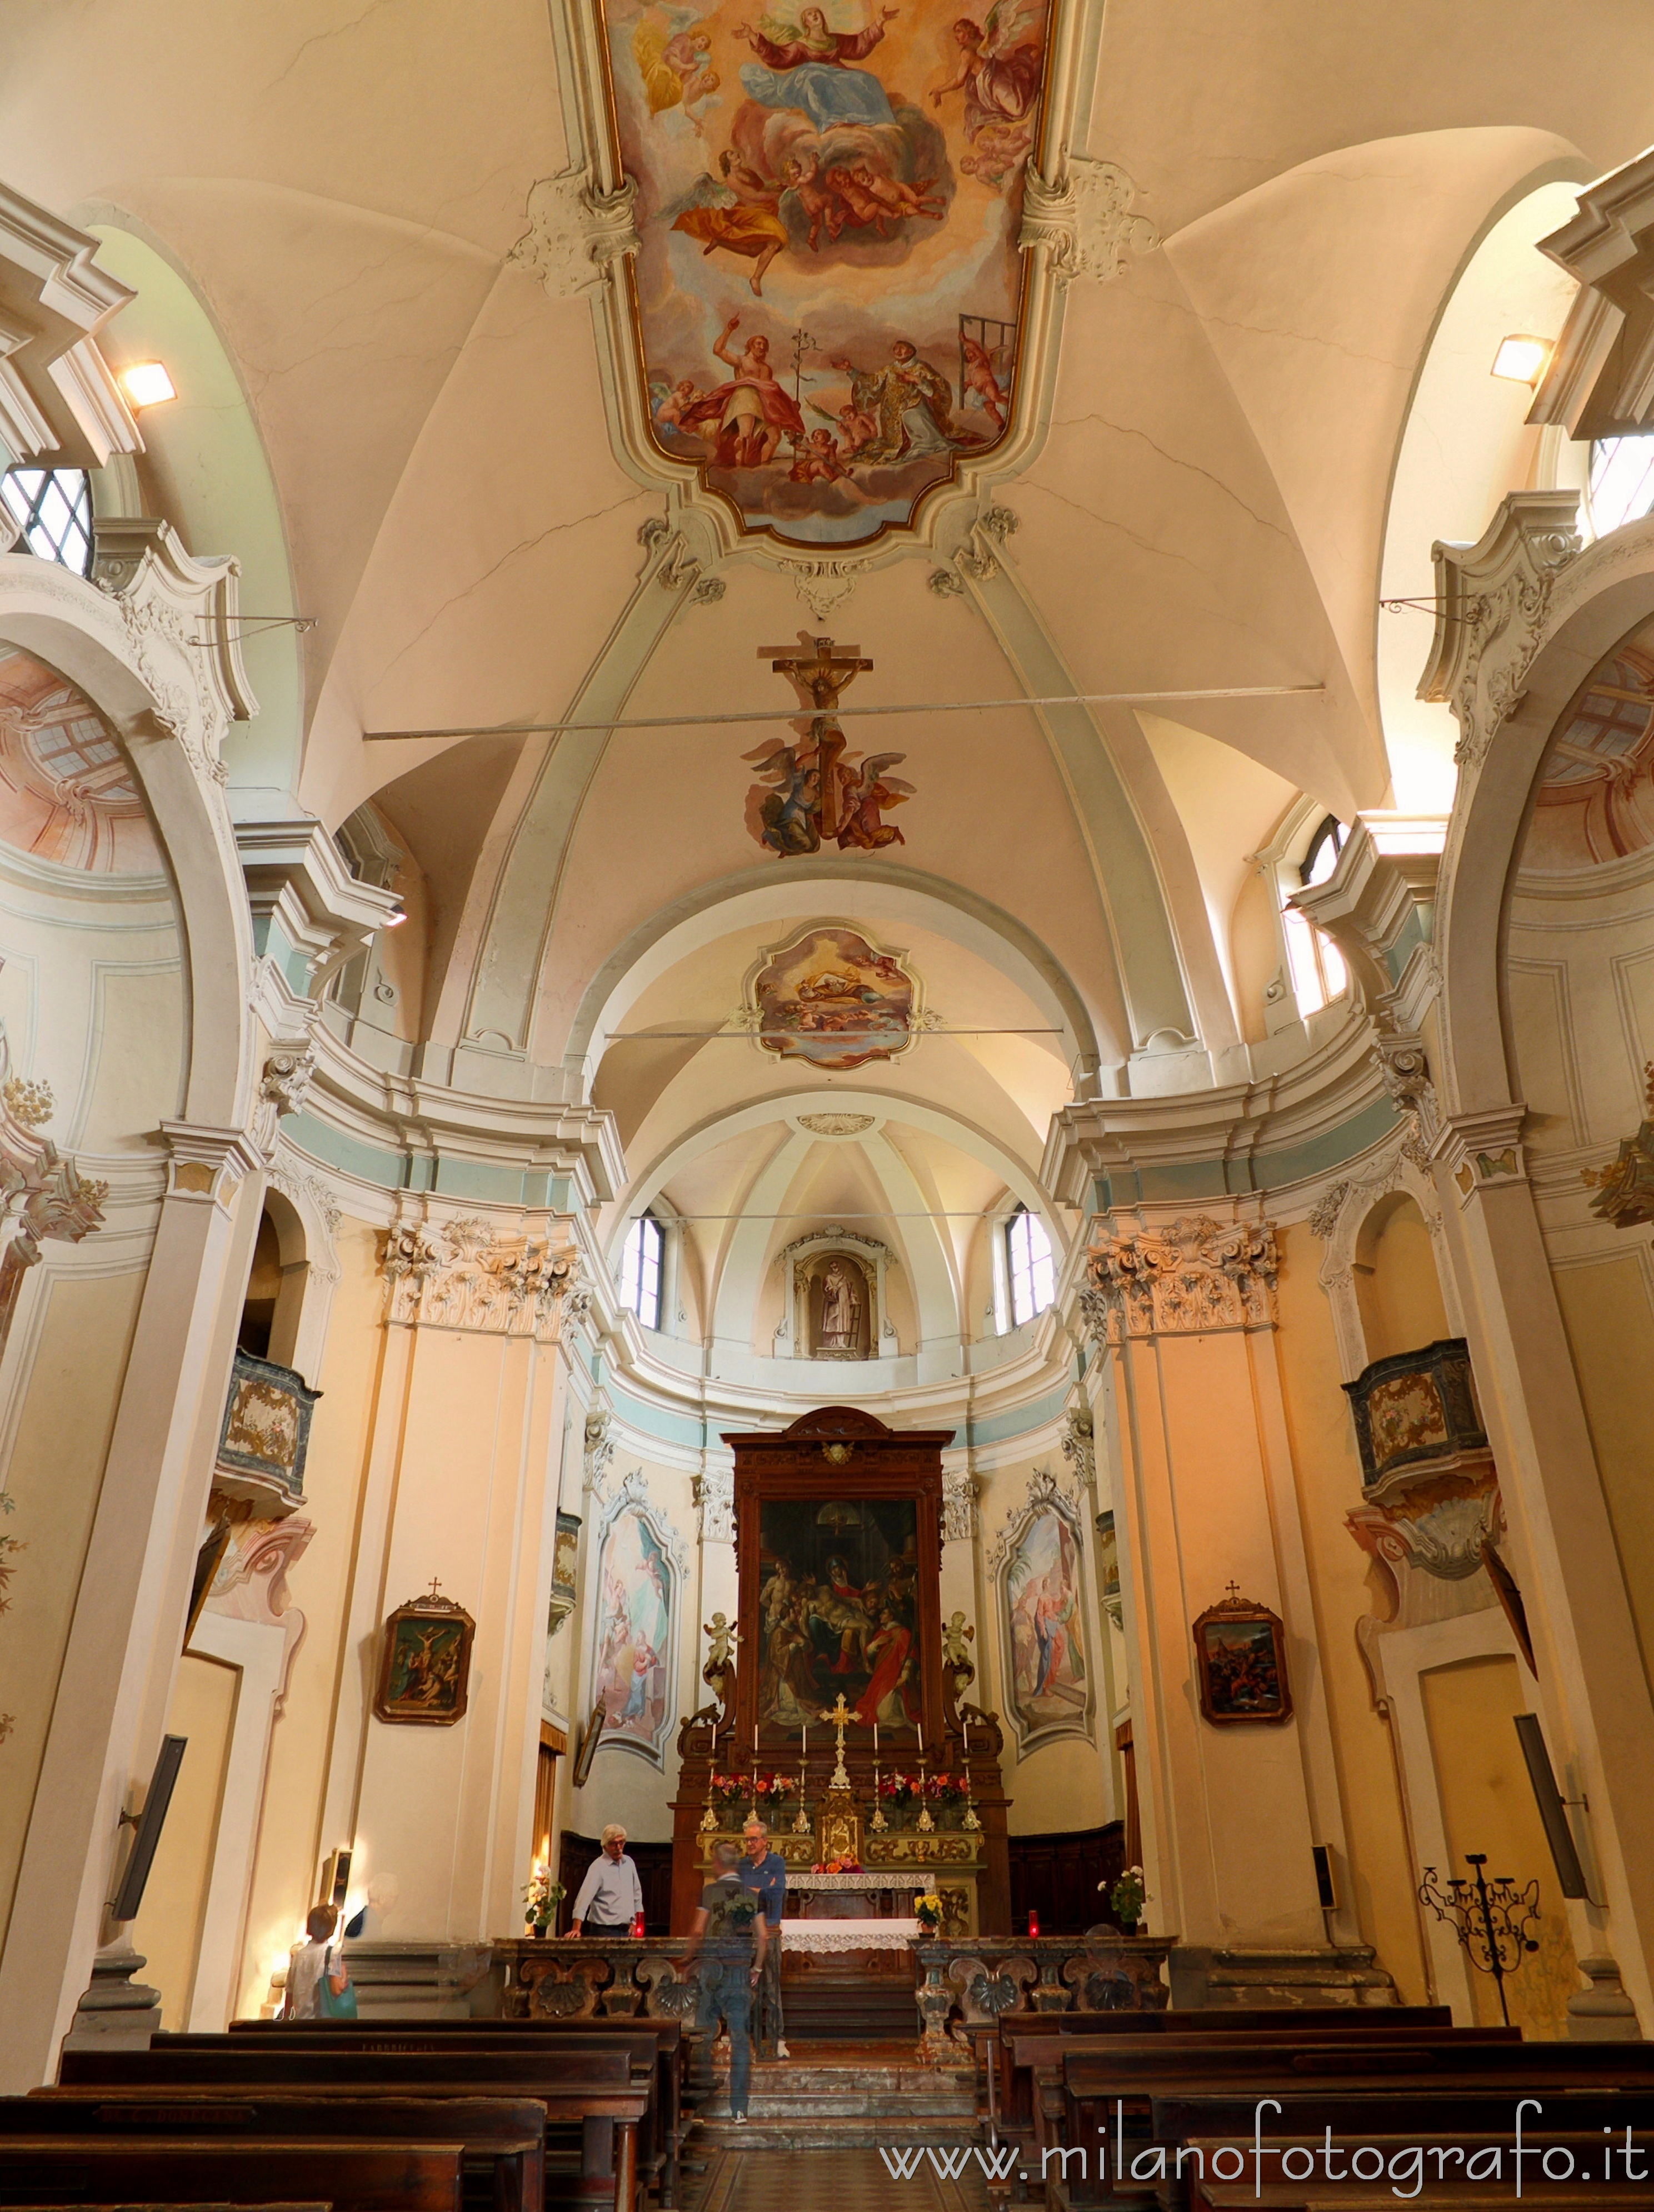 Oggiono (Lecco, Italy): Interiors of the Church of San Lorenzo - Oggiono (Lecco, Italy)